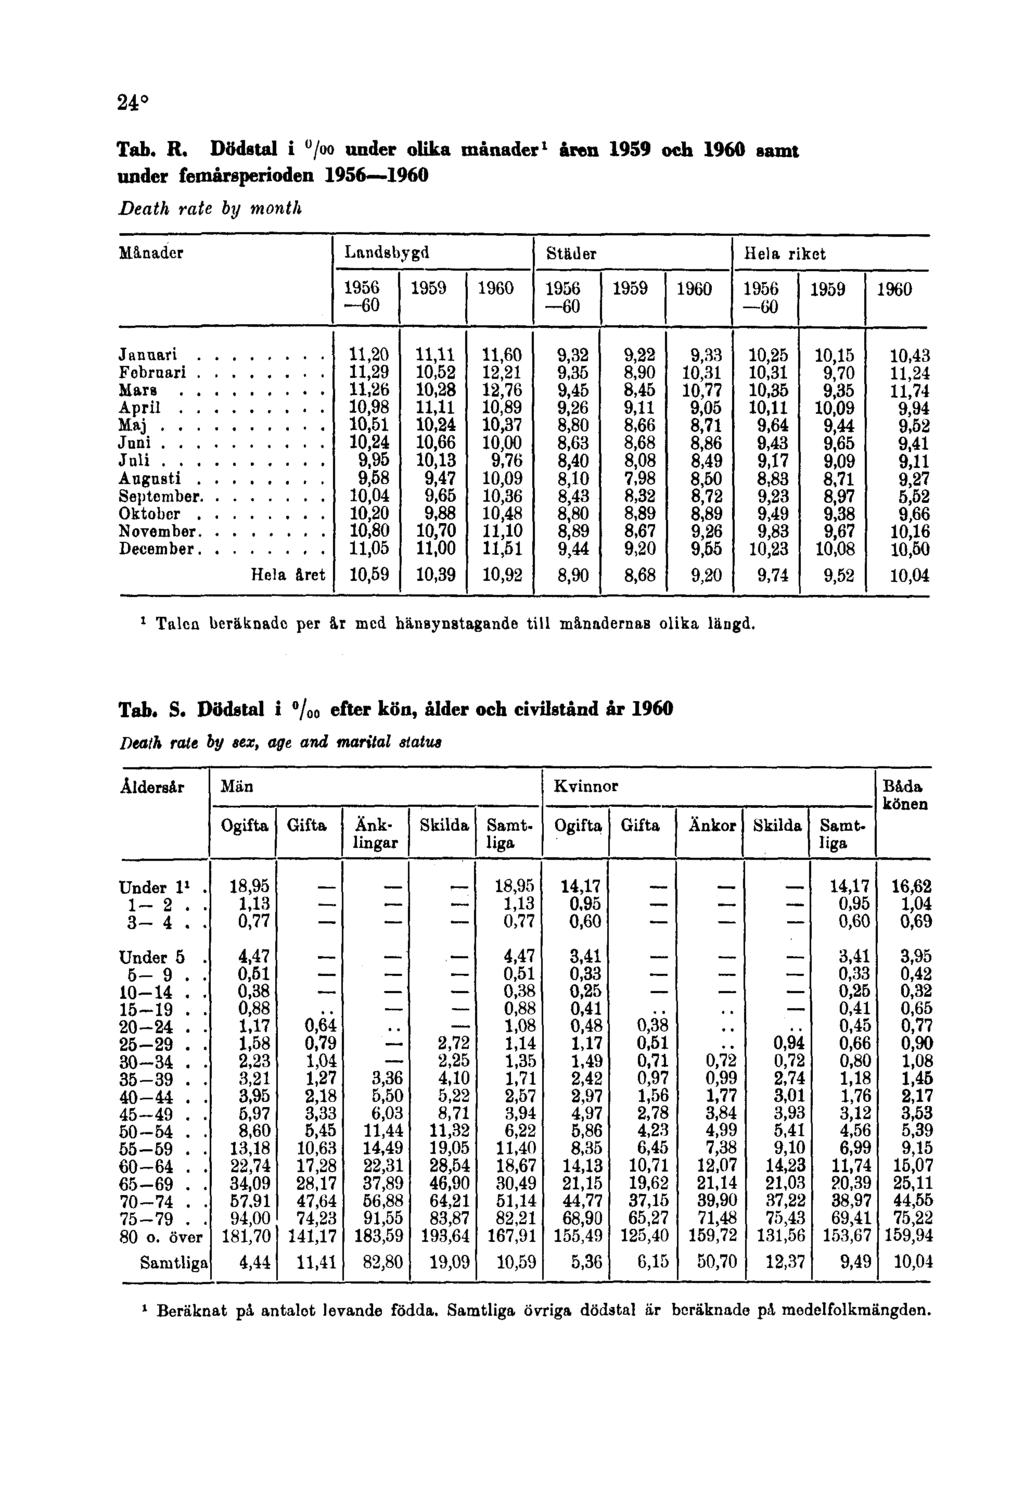 24º Tab. R. Dödstal i under olika månader 1 åren 1959 och 1960 samt under femårsperioden 1956 1960 Death rate by month 1 Talen beräknade per är med hänsynstagande till månaderaab olika längd.